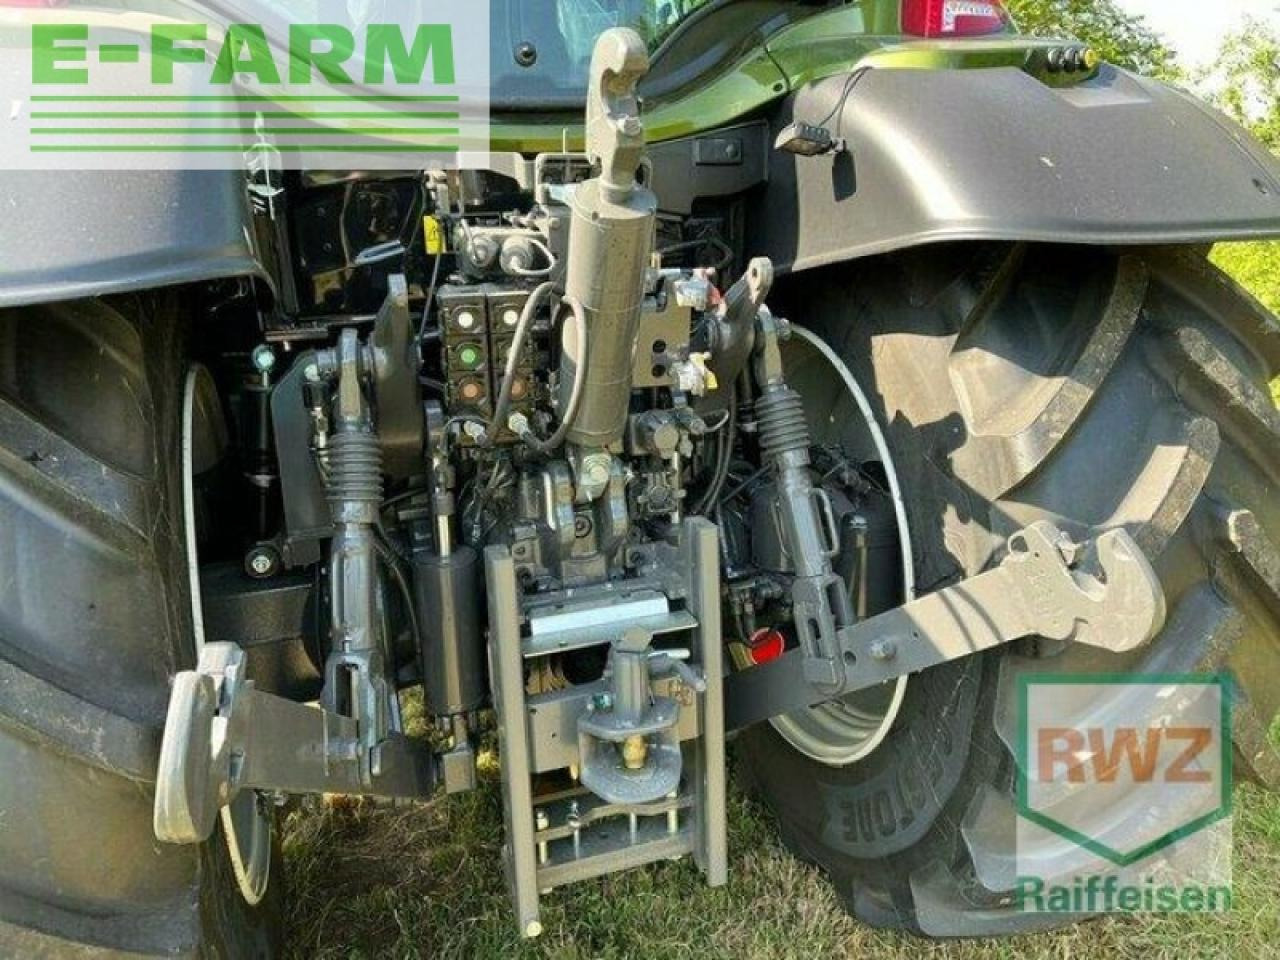 Farm tractor Valtra n154 active e: picture 8